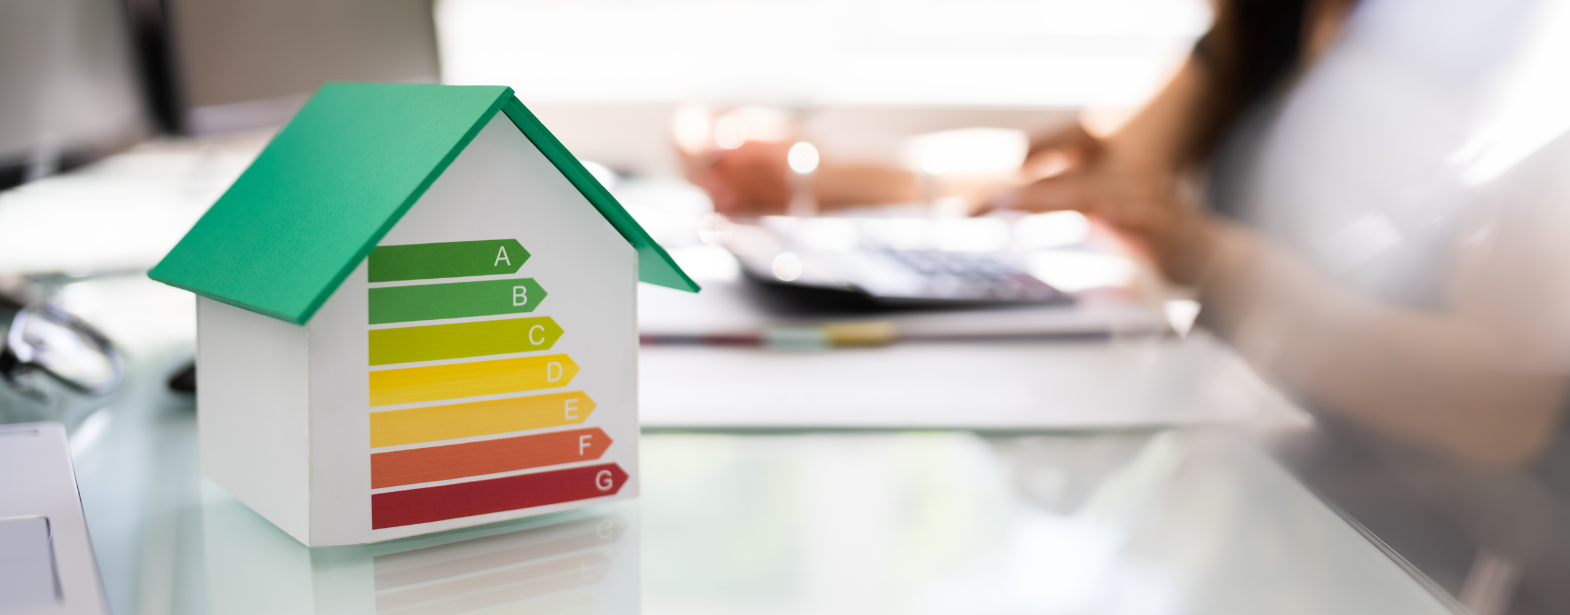 Okna energooszczędne - jakie modele wybrać, by zmniejszyć rachunki za energię?